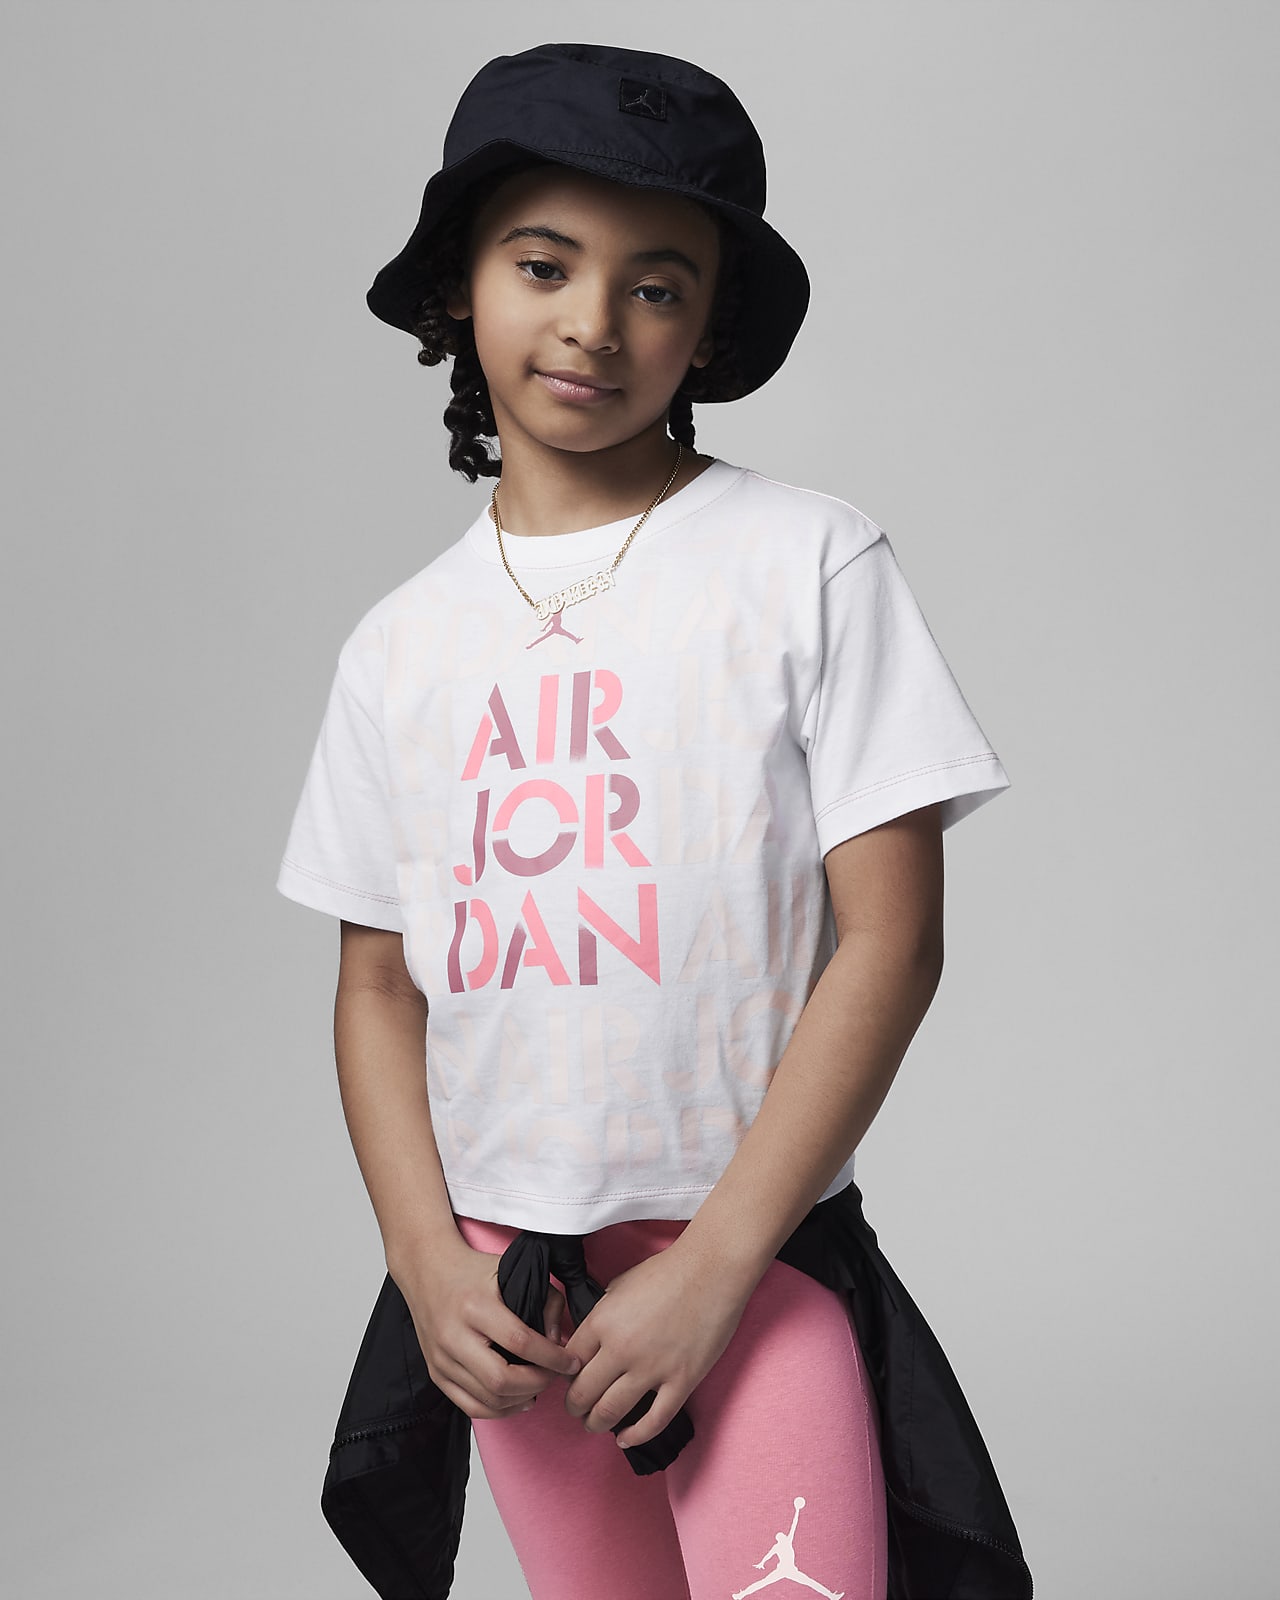 Nike Jordan Boys' Toddler Air Jumpman T-shirt In Black